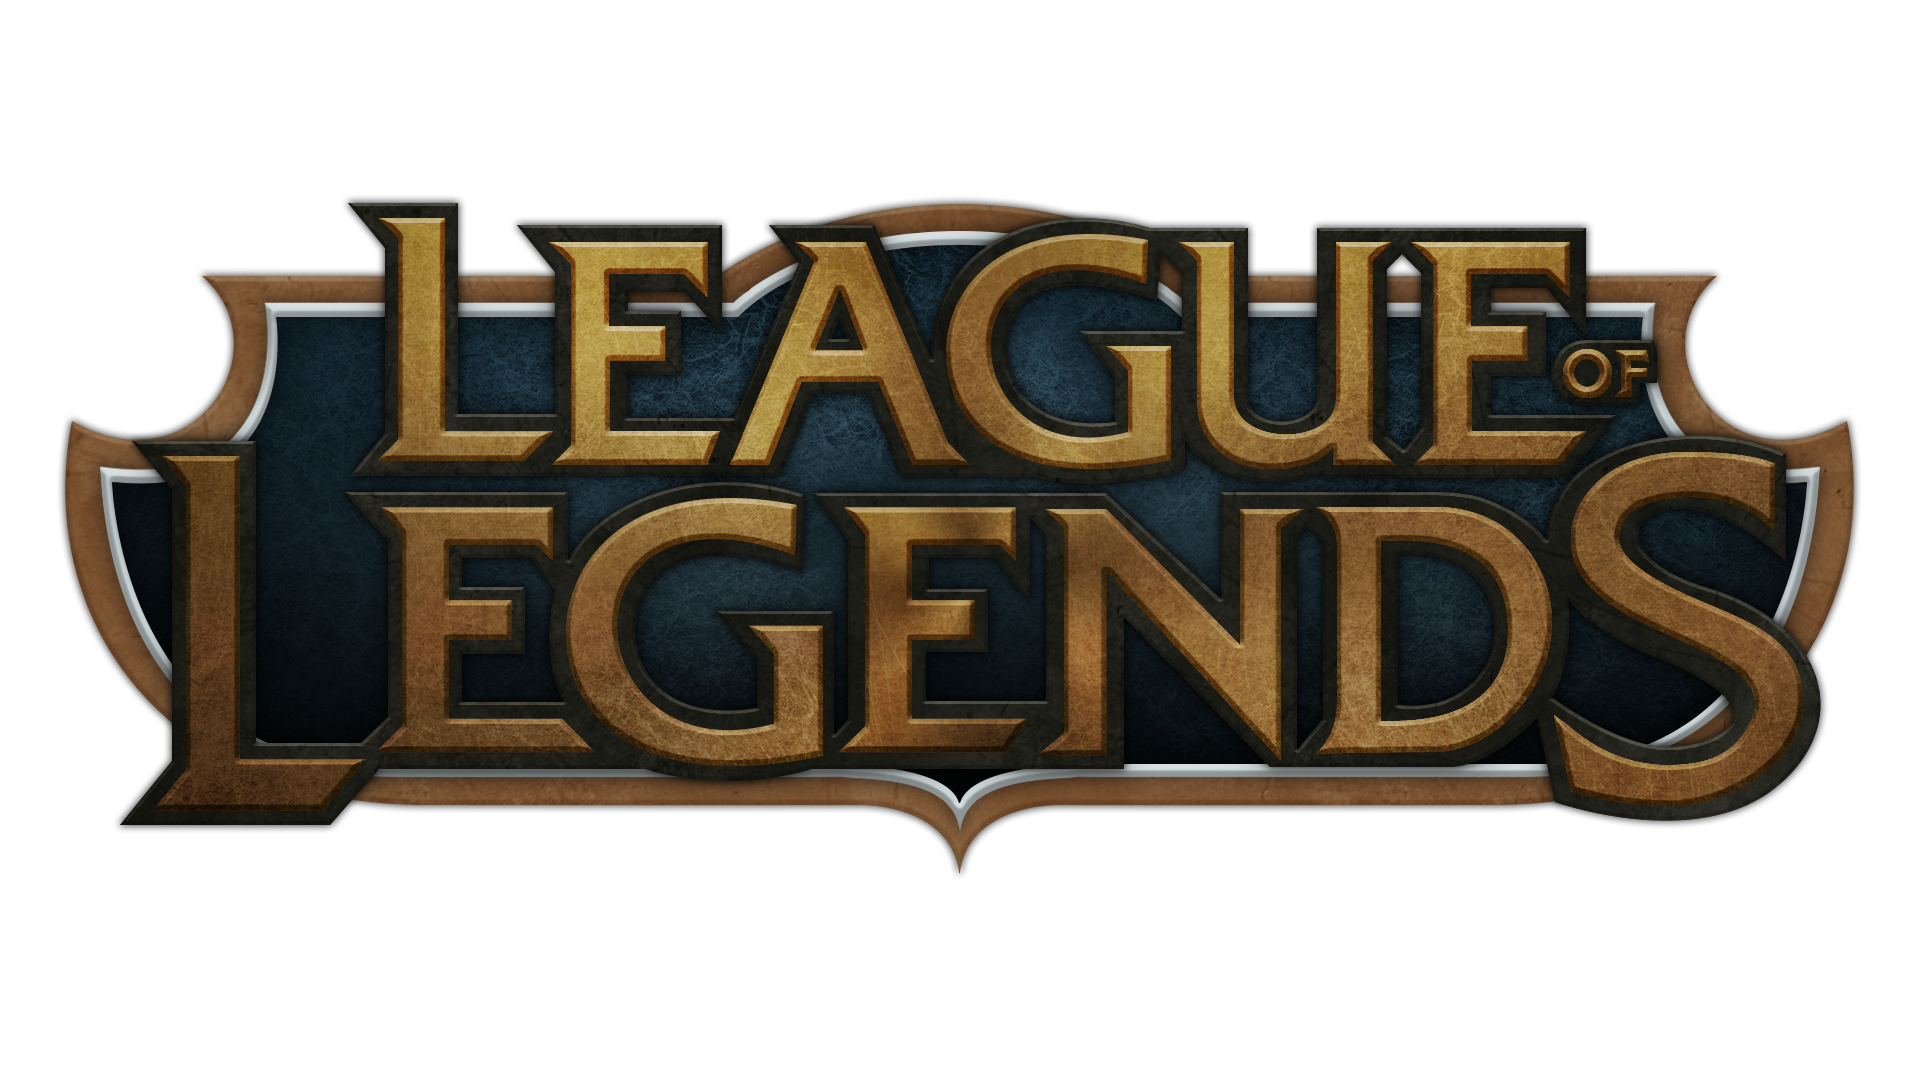 League Of Legends Png File PN